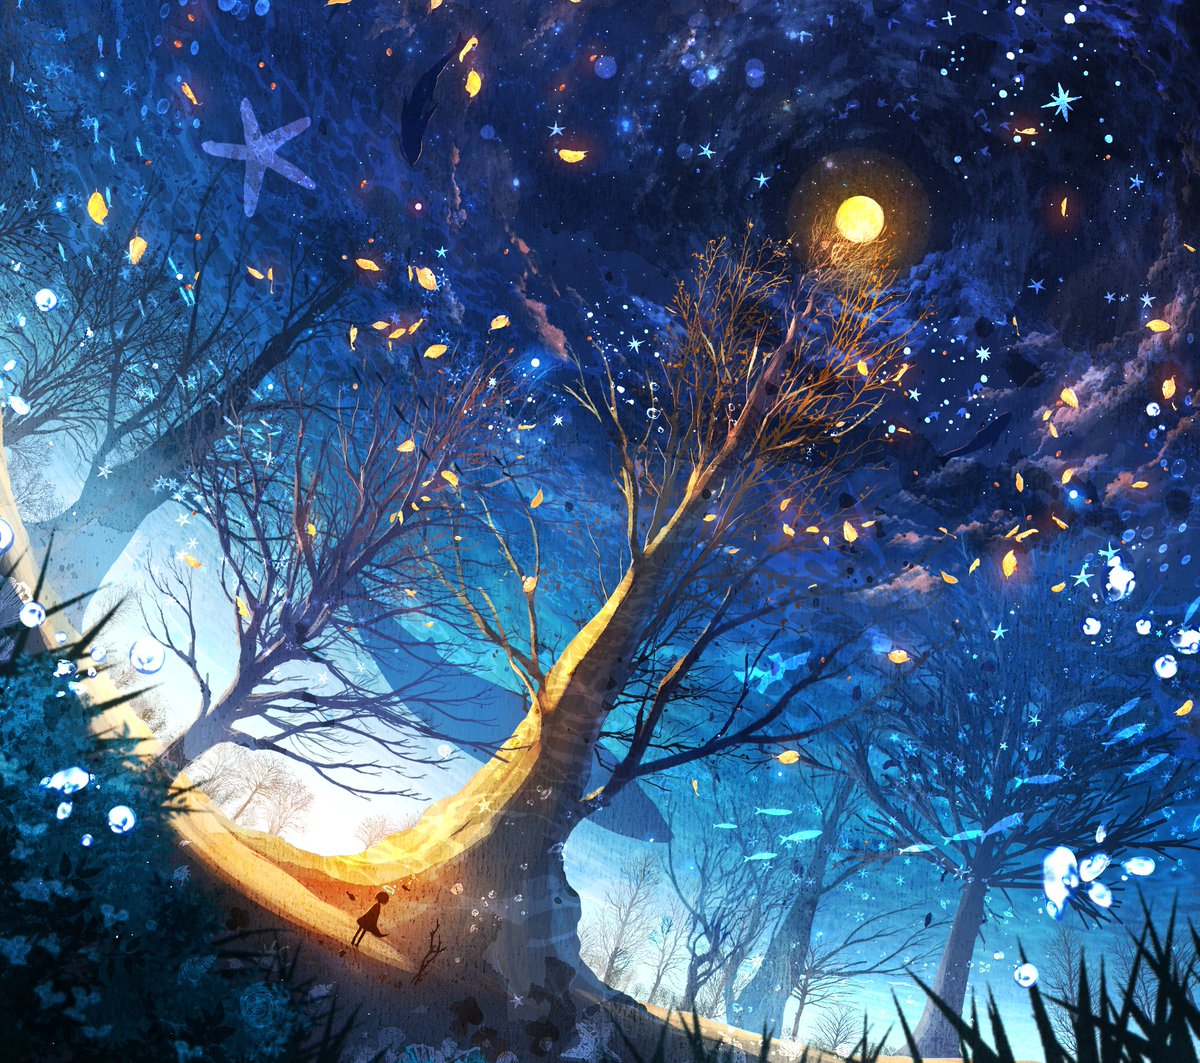 「星と共存する森

#イラスト #絵描きさんと繫がりたい 」|輪廻狐(りんねこ）のイラスト